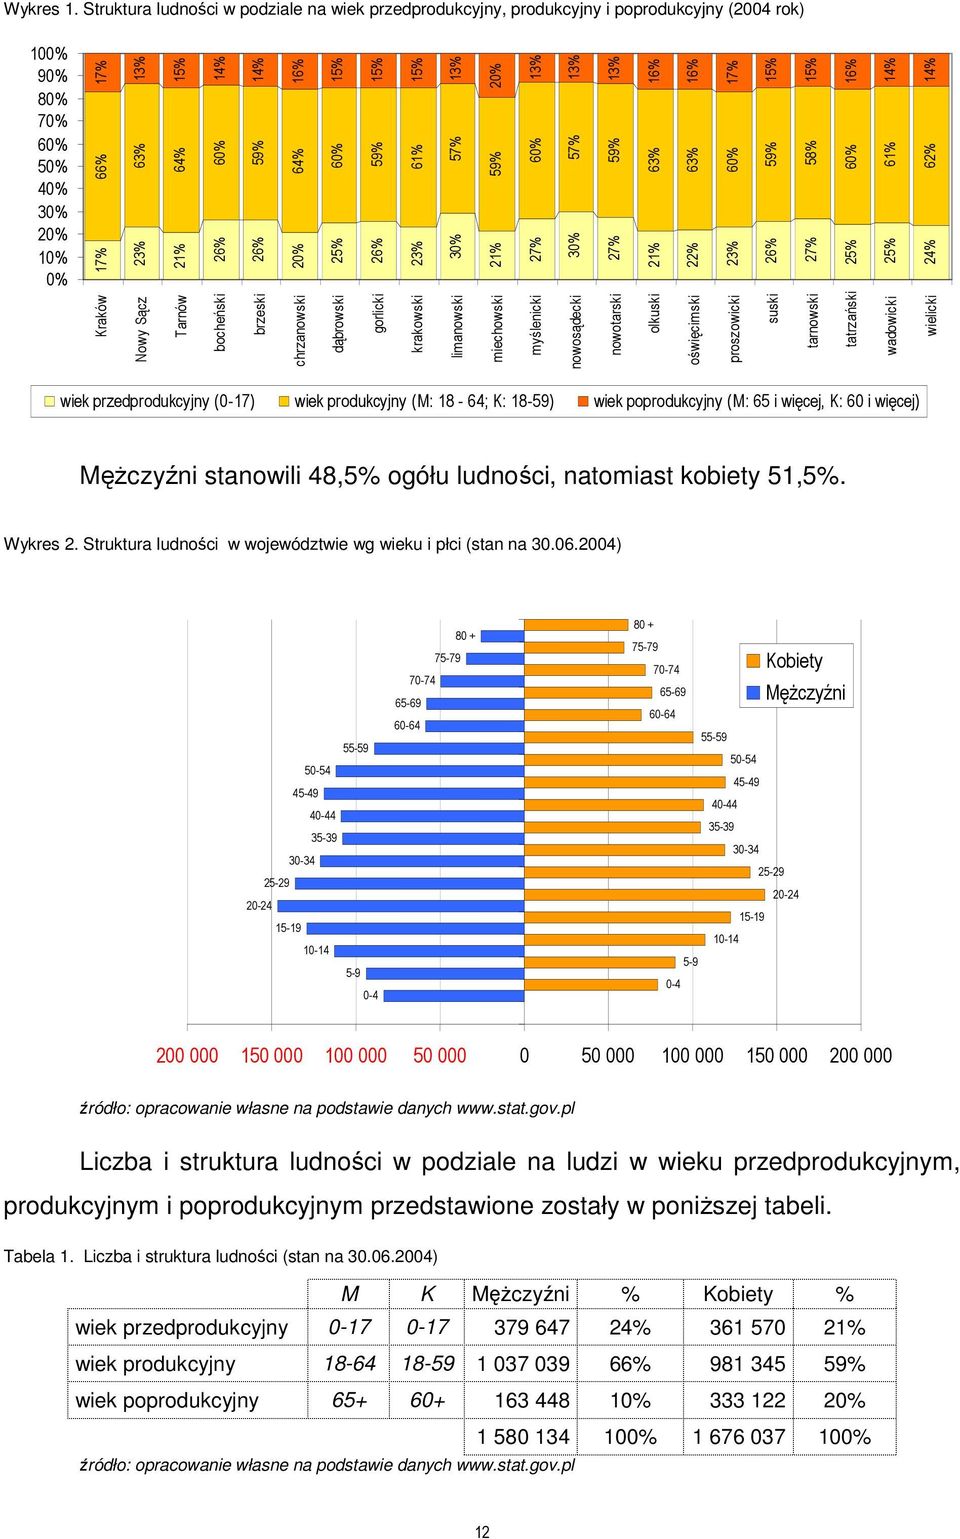 20% 64% 16% 25% 60% 15% 26% 59% 15% 23% 61% 15% 30% 57% 13% 21% 59% 20% 27% 60% 13% Kraków 30% 57% 13% Nowy Sącz 27% 59% 13% Tarnów 21% 63% 16% bocheński 22% 63% 16% brzeski 23% 60% 17% 26% 59% 15%